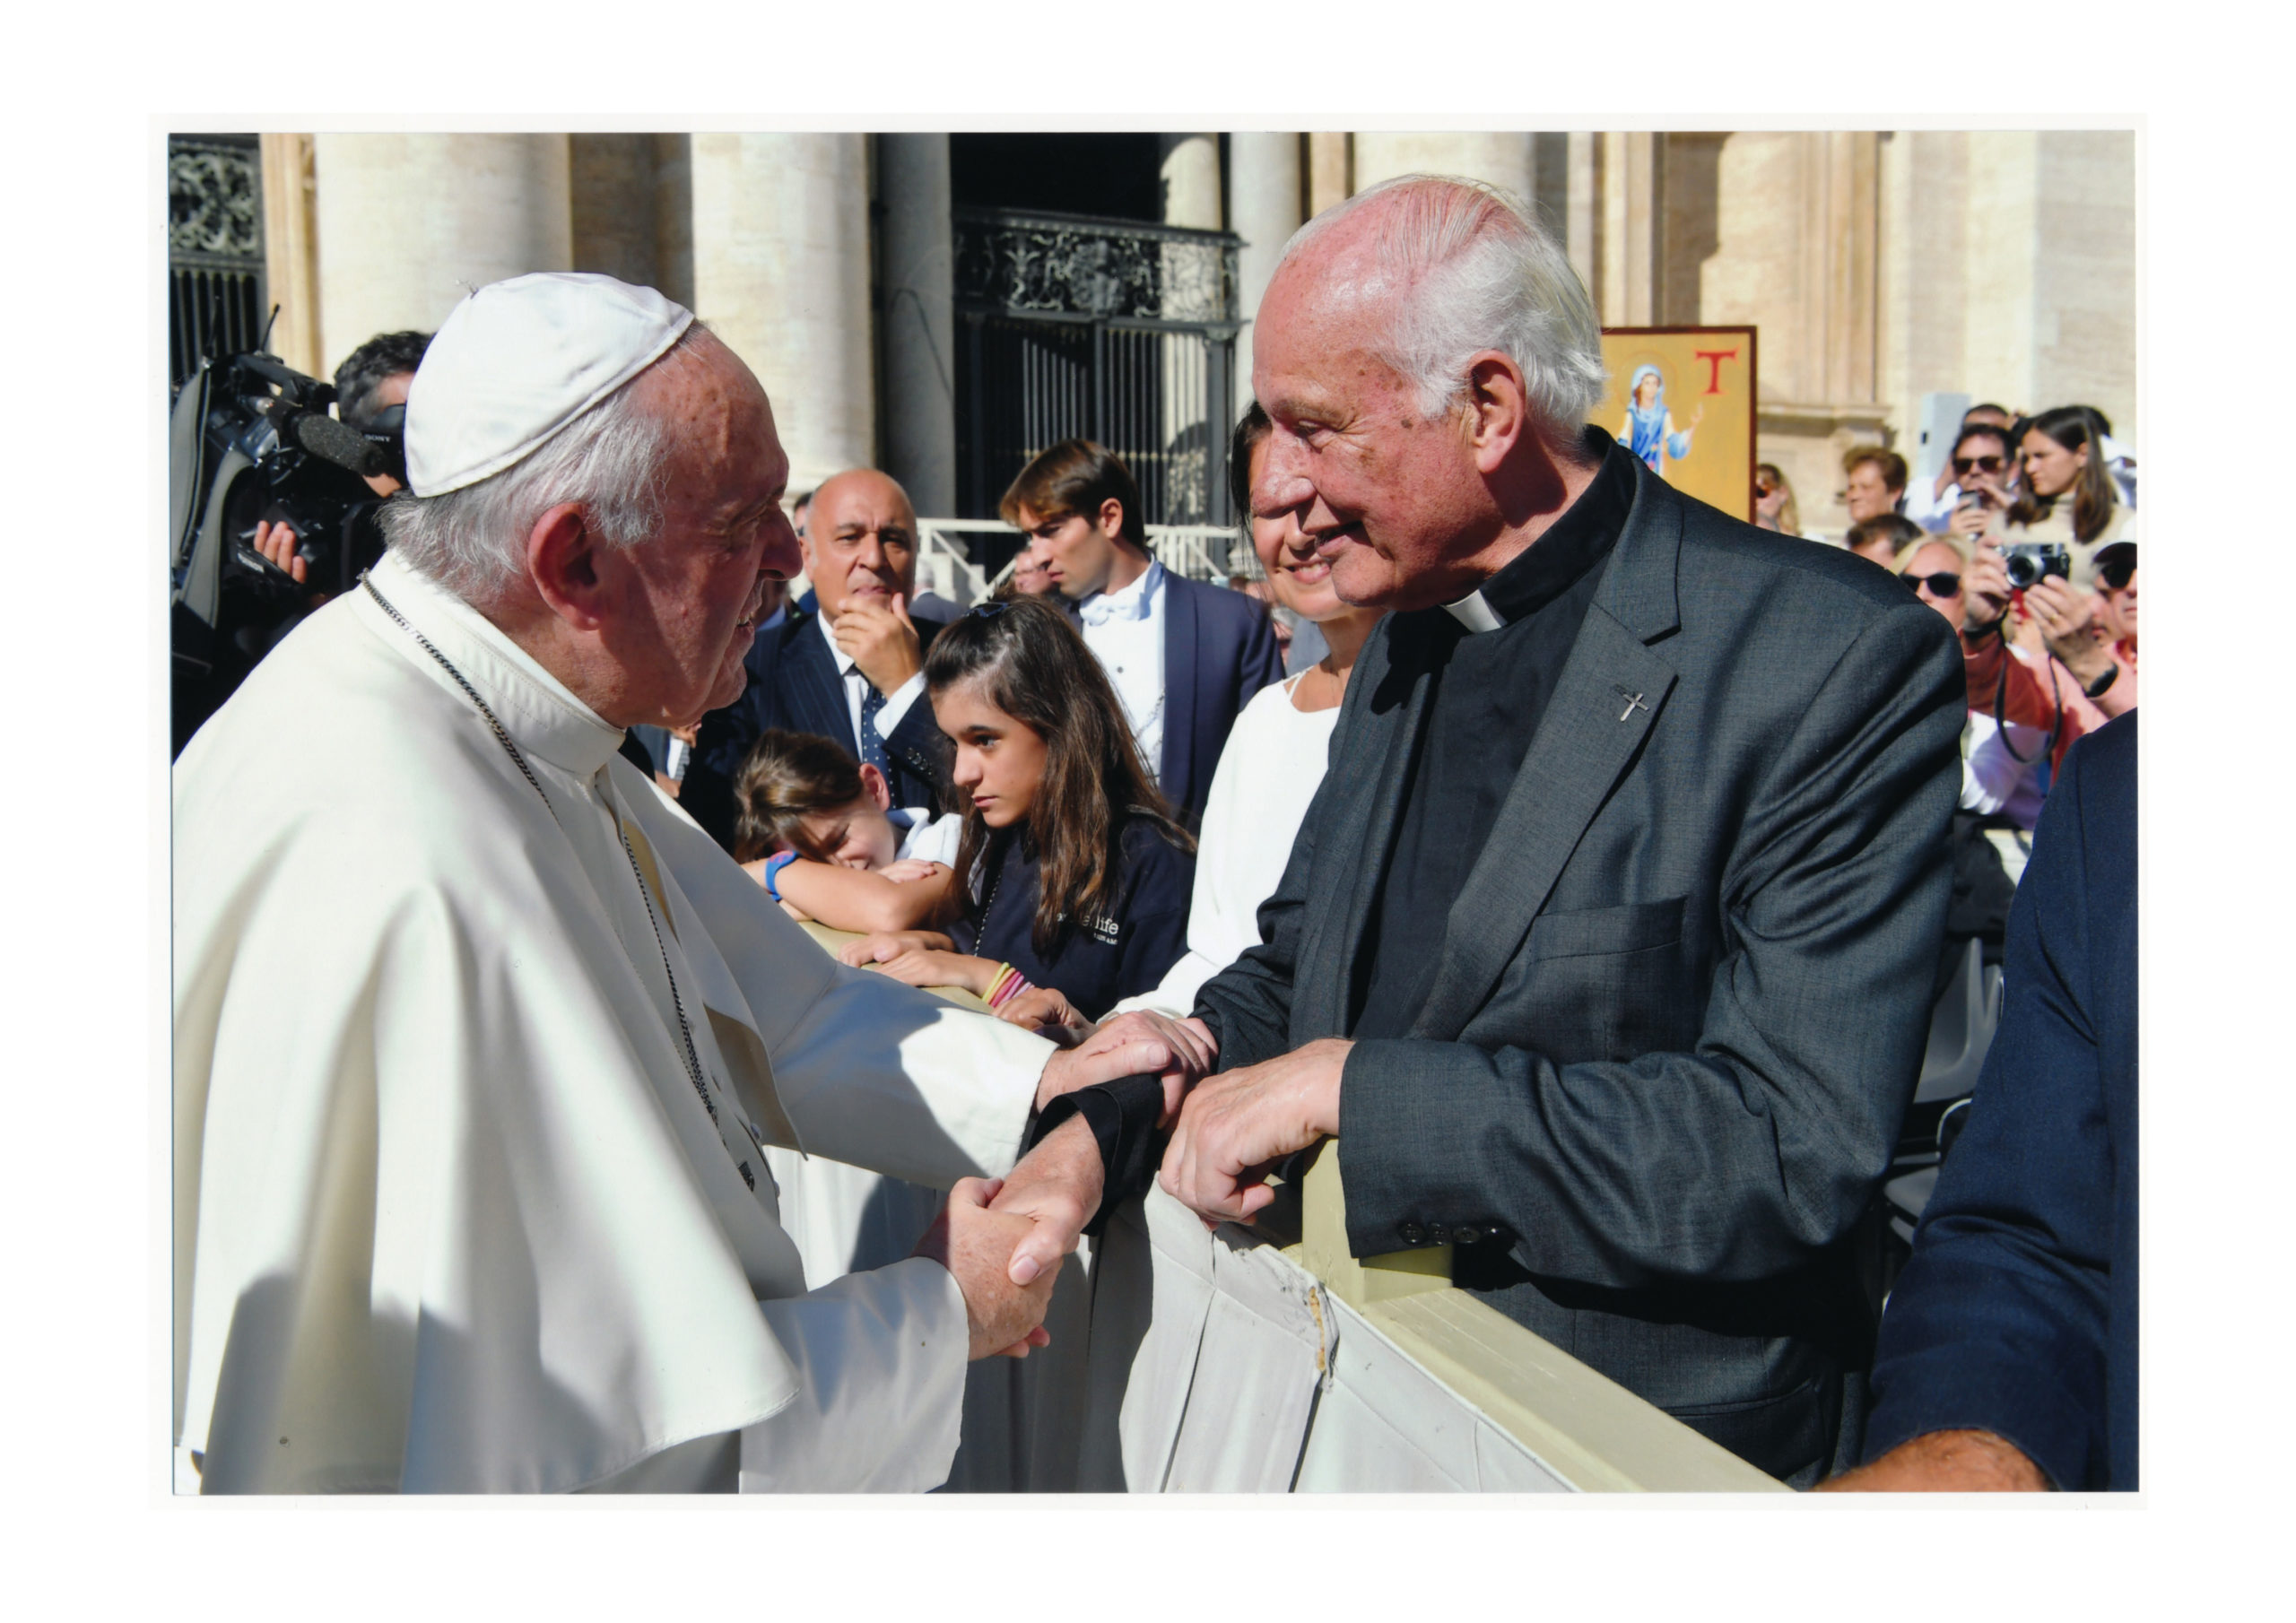 Monsignore Wilm Sanders und Papst Franziskus